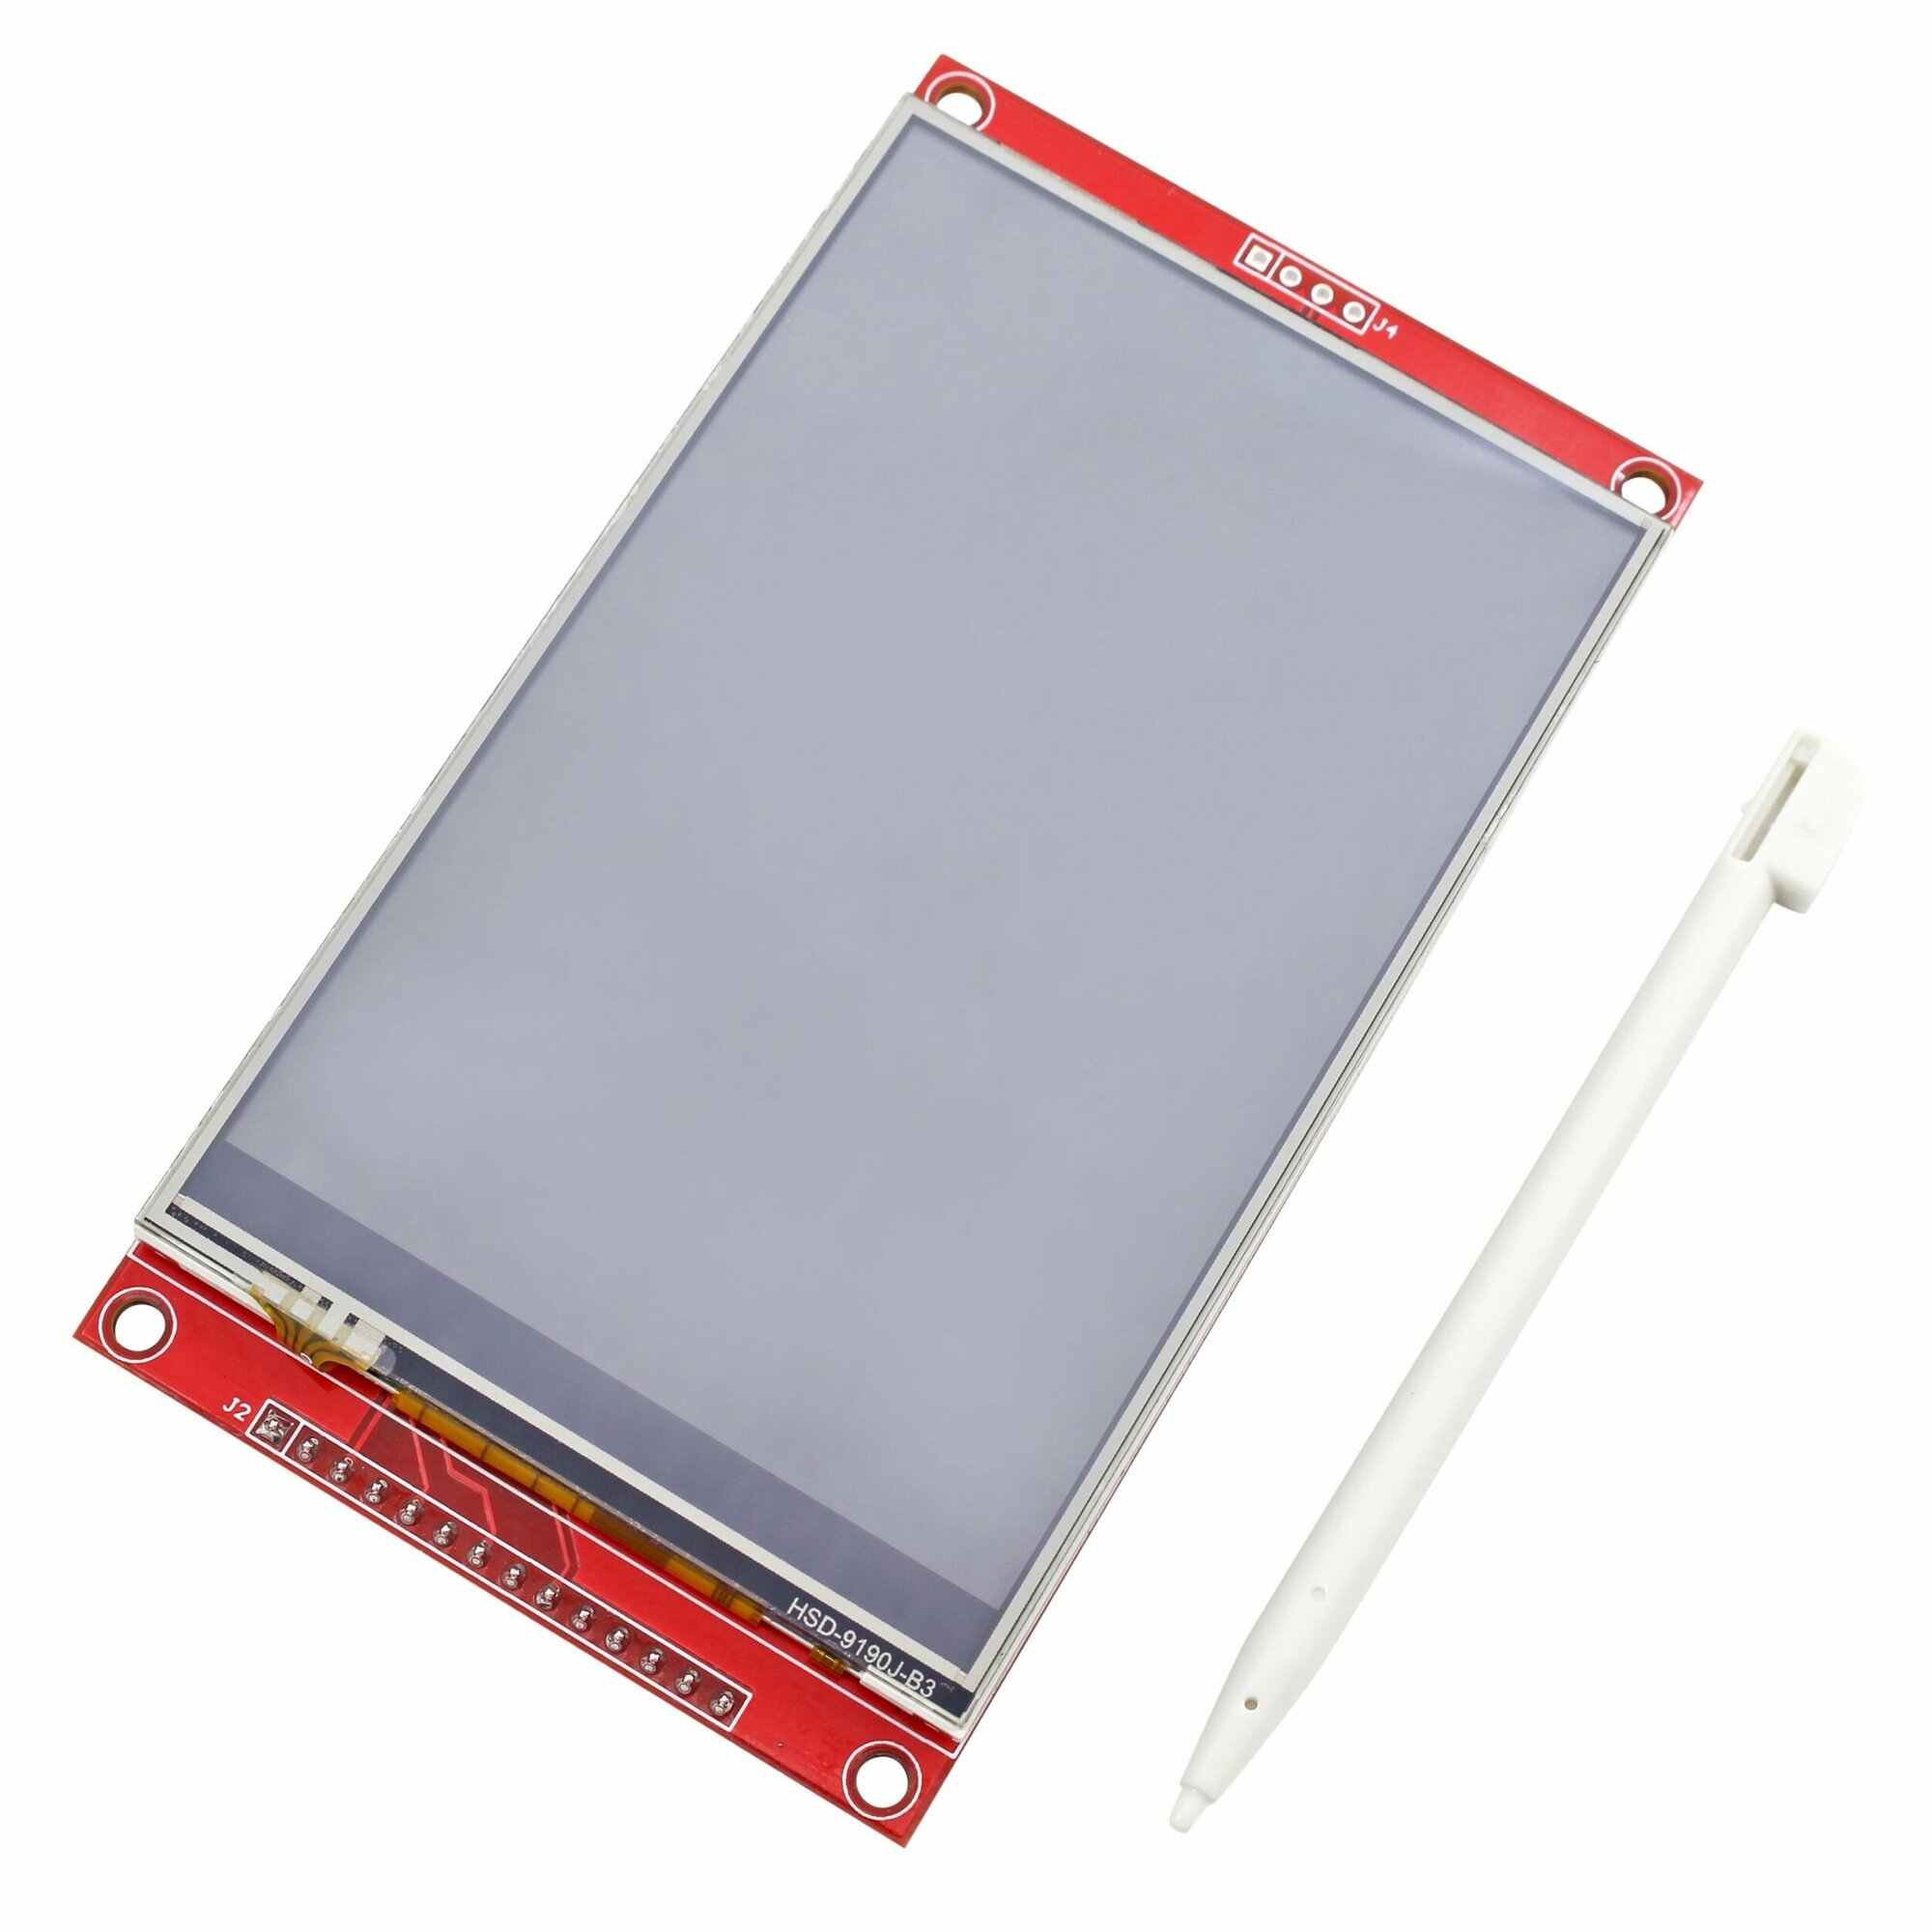 Цветной сенсорный дисплей 4.0 TFT LCD 480x320 ST7796S, SPI интерфейс